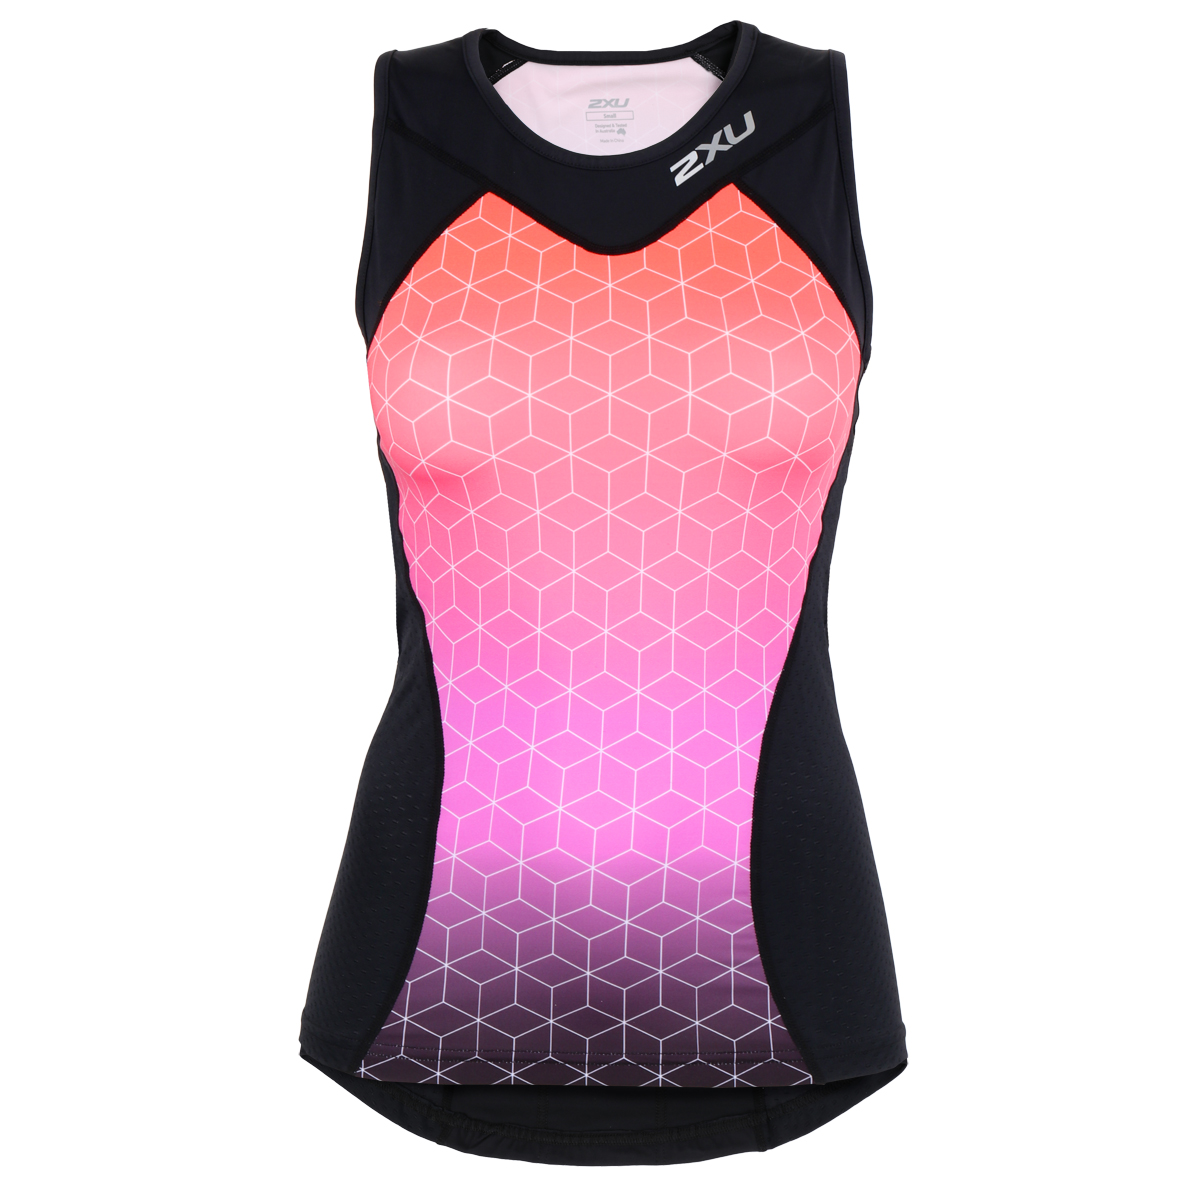 Bild von 2XU Active Tri Damen Triathlonshirt - black/sunset ombre